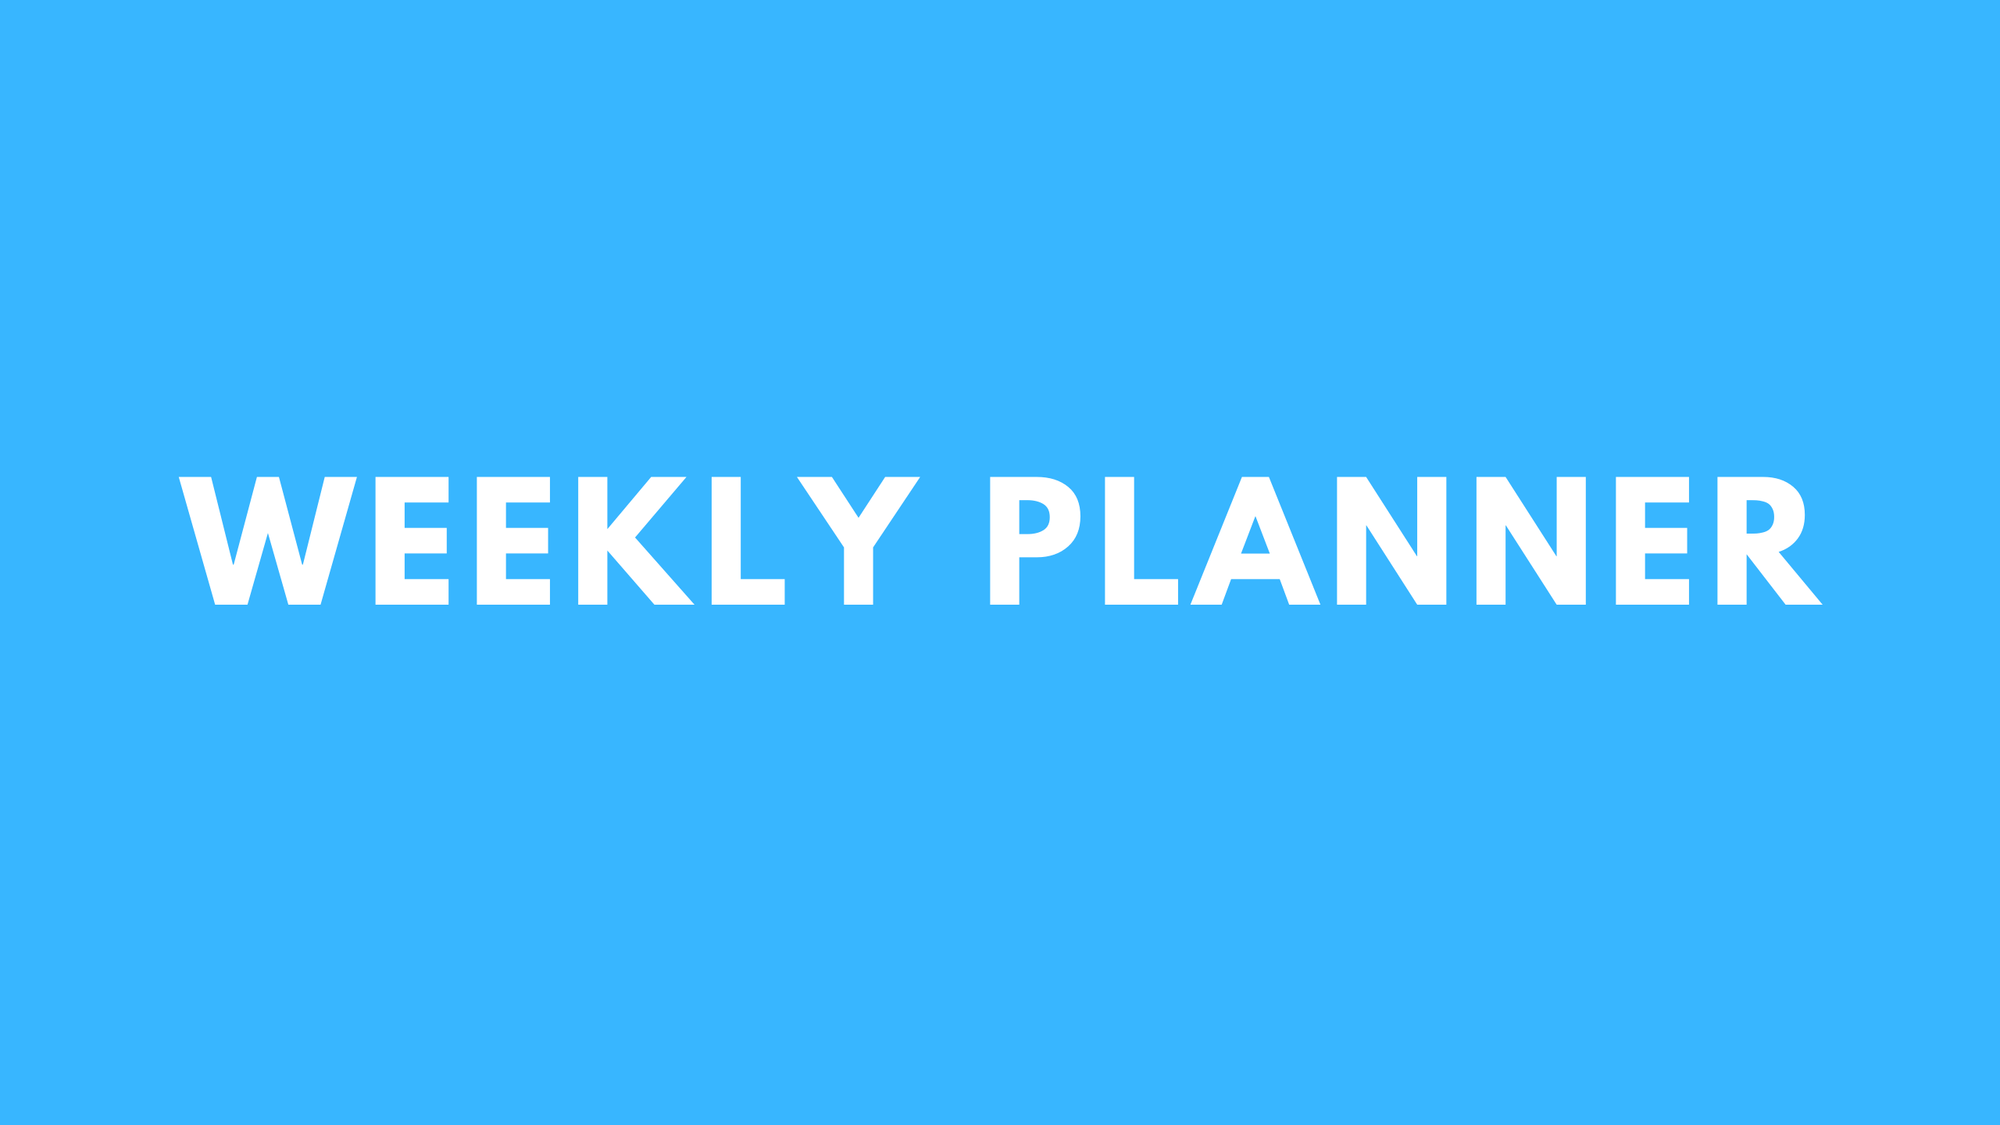 Full Weekly Planner